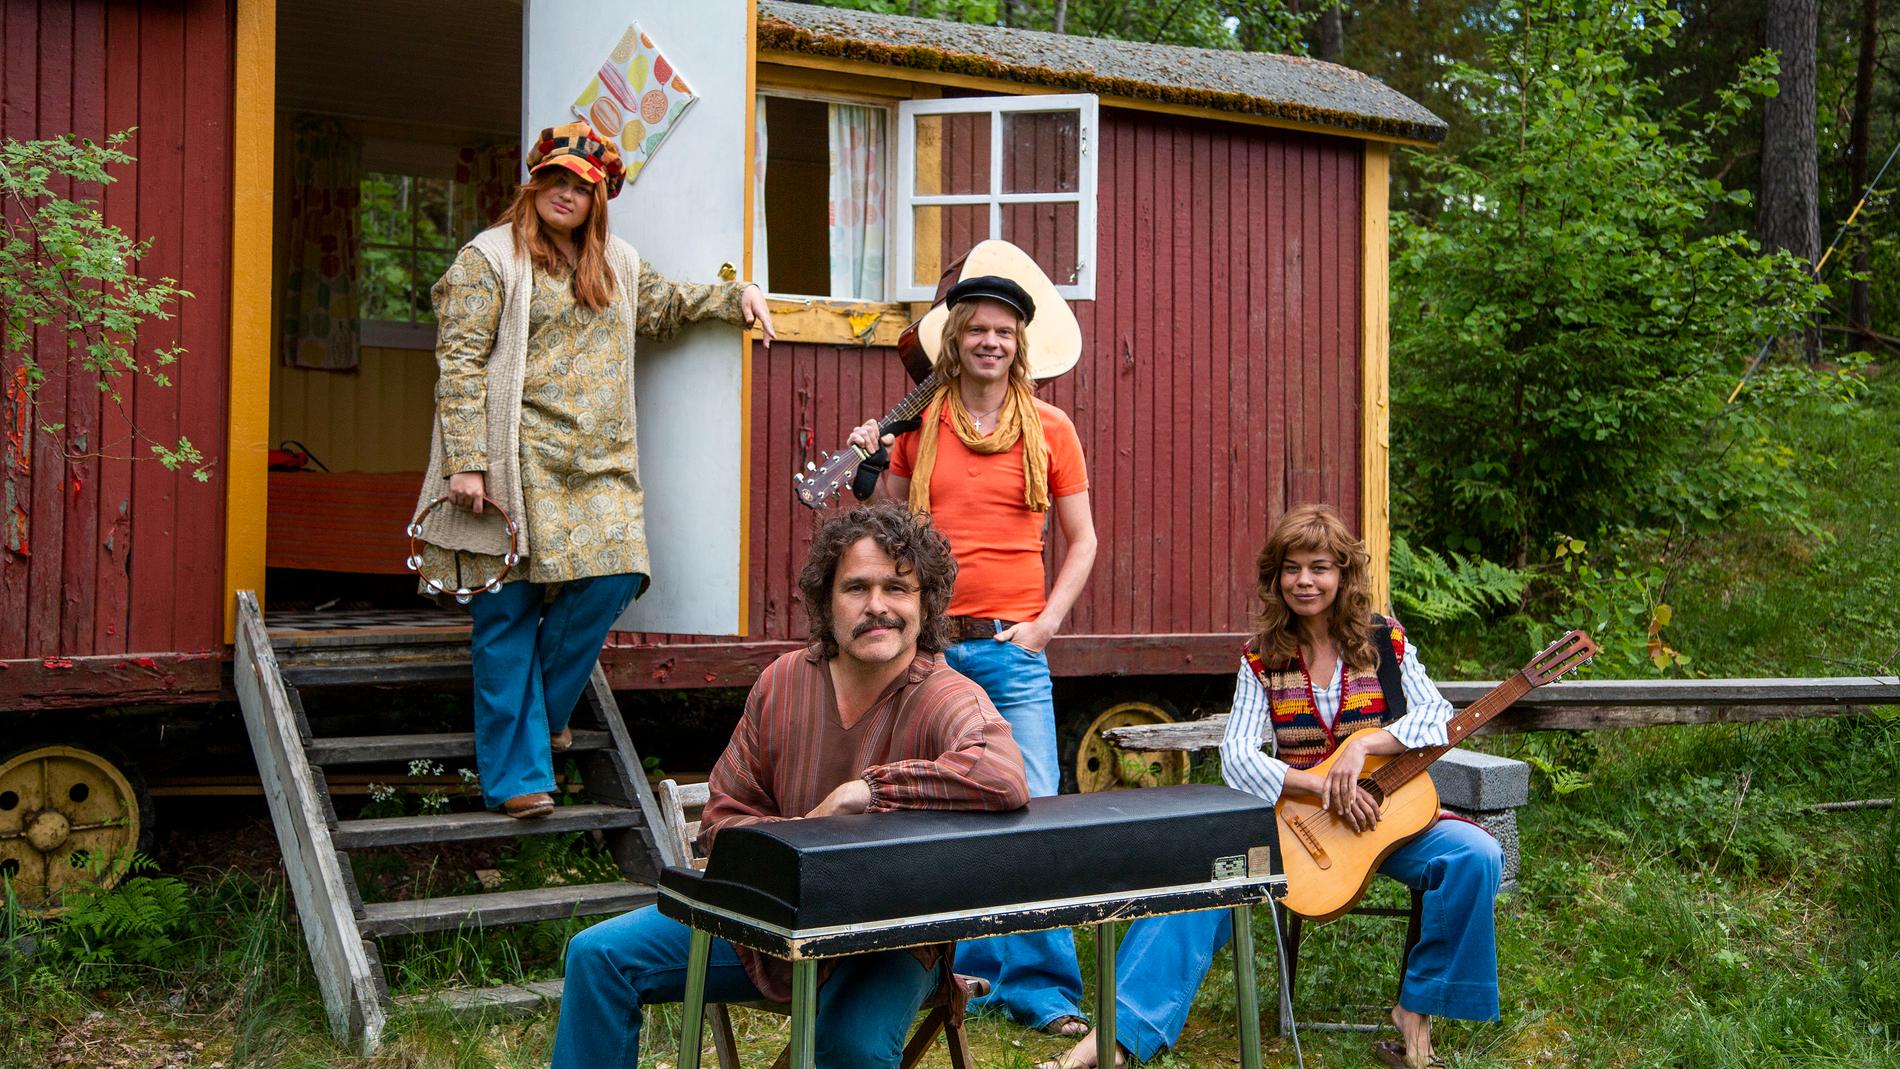 Lotta Lundgren, Erik Haag, Kakan Hermansson och Olof Wretling startar band i en ny SVT-serie. Pressbild.